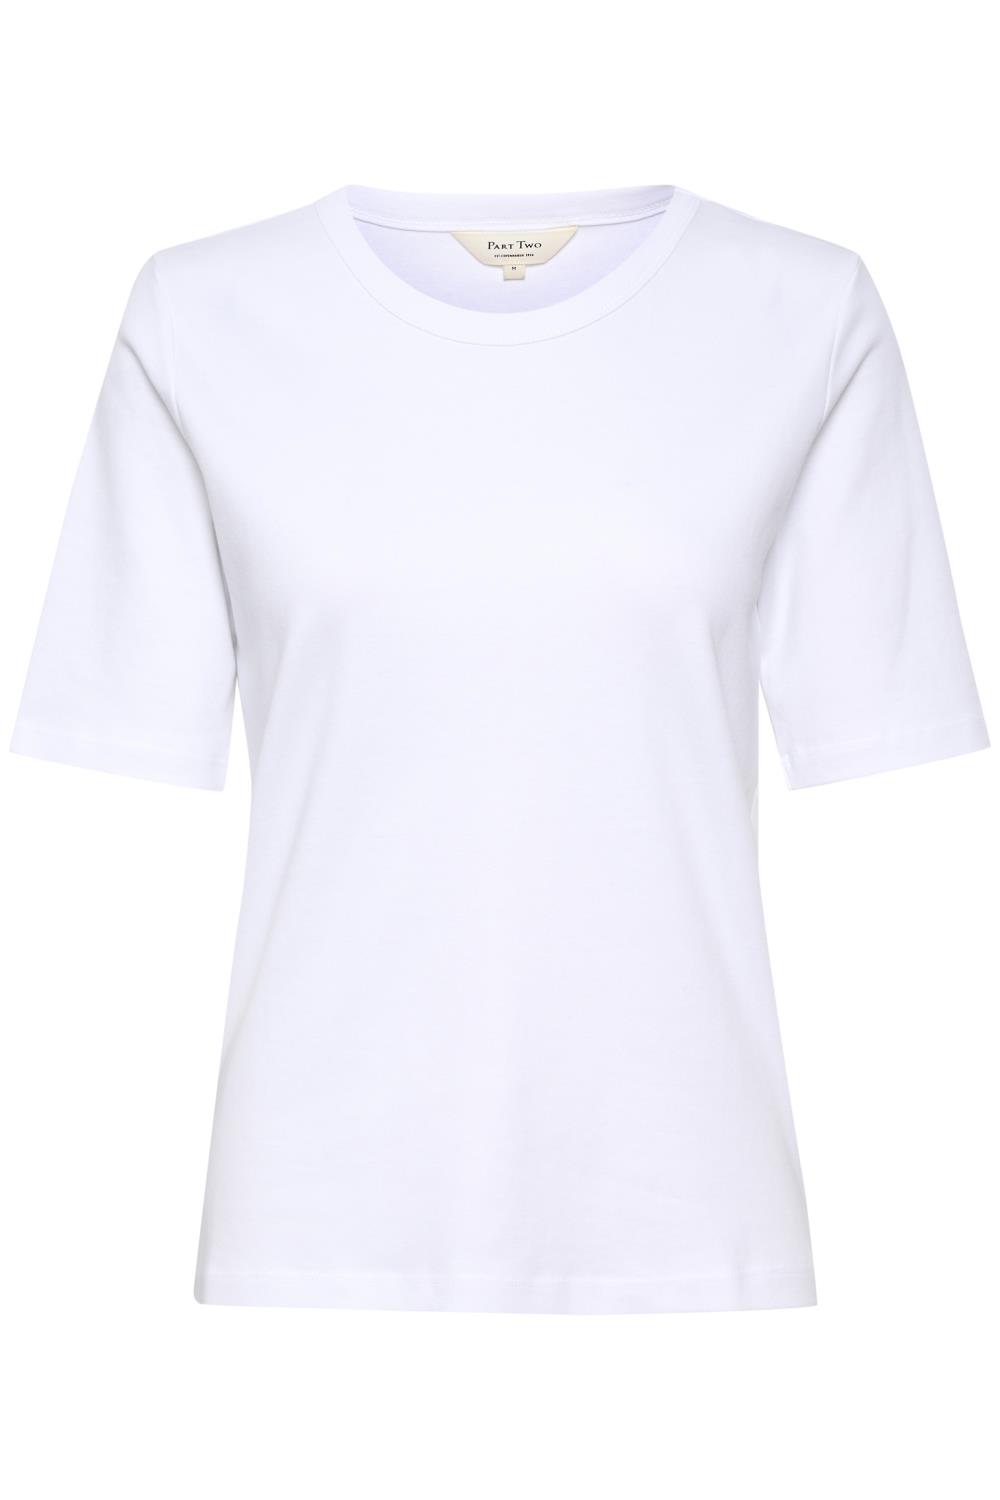 Part Two Ratana T-shirt, hvit bomull